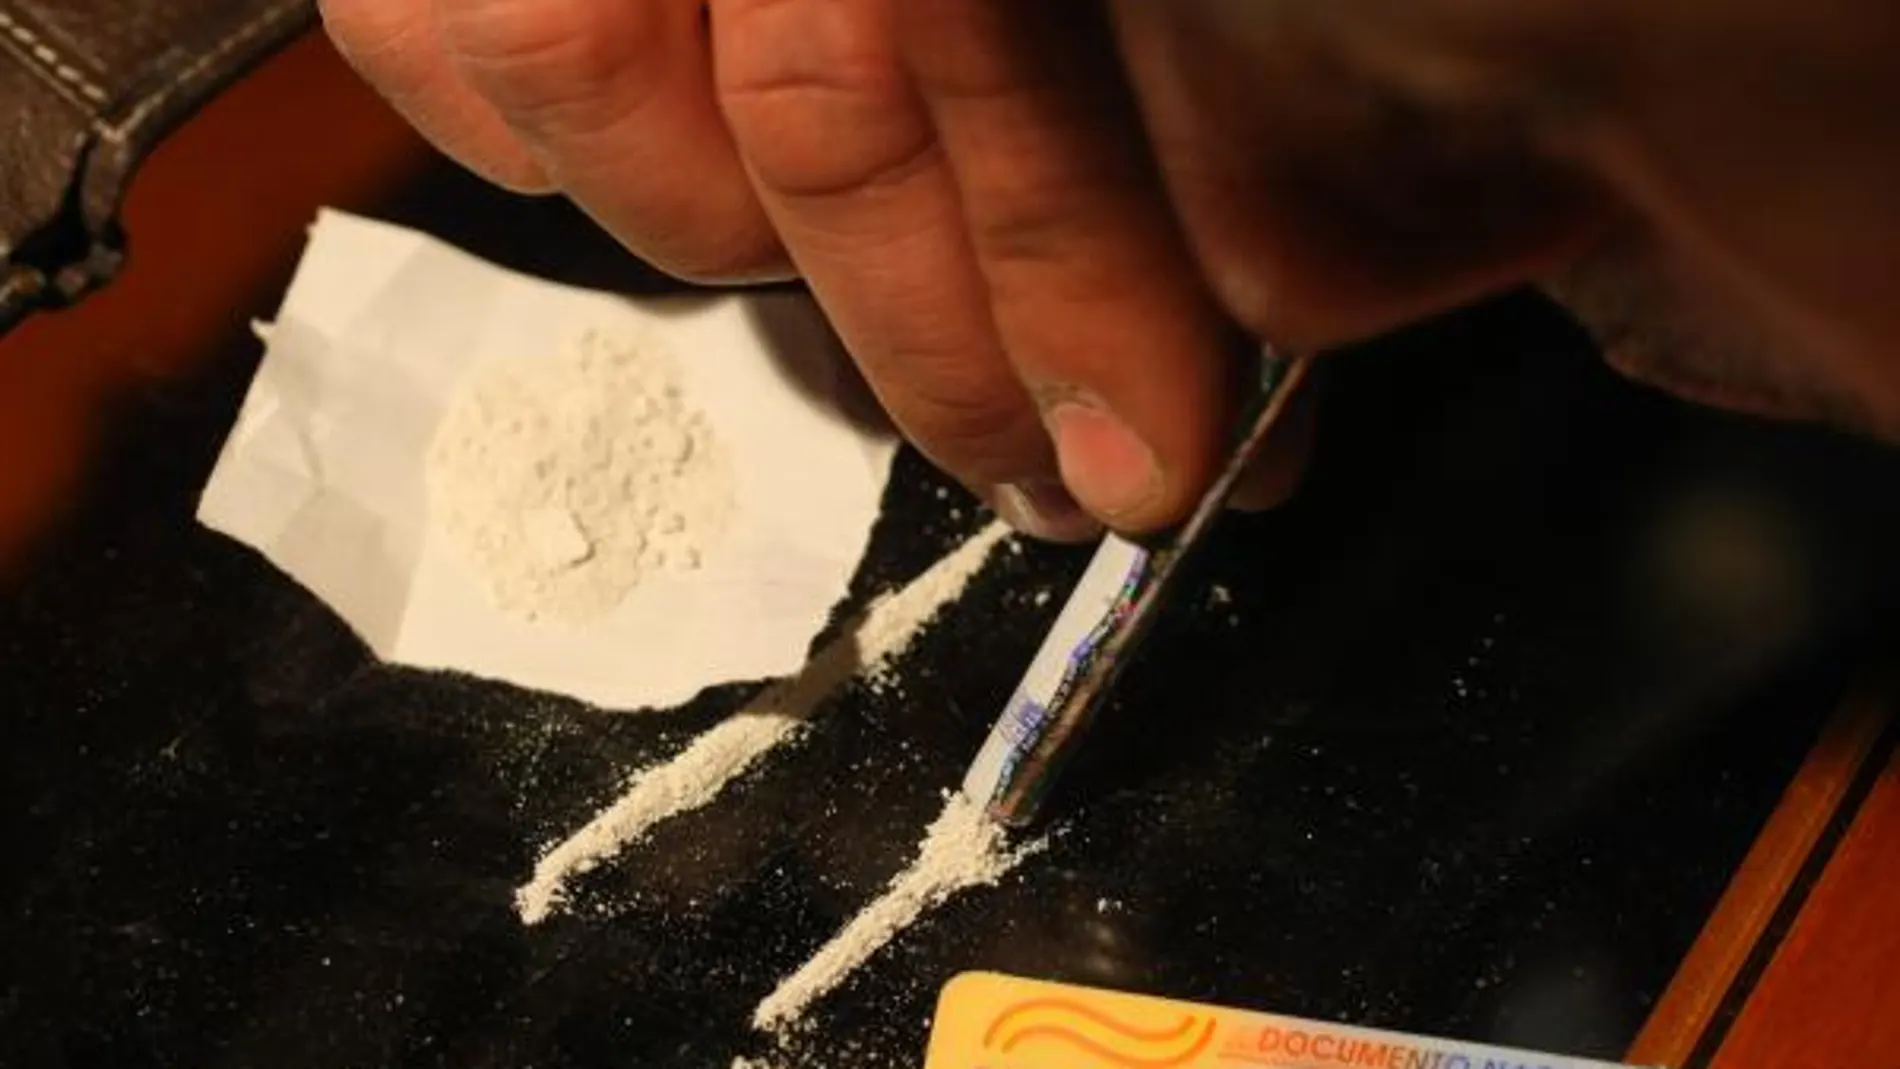 España continúa a la cabeza de Europa en cuanto a consumo de cocaína